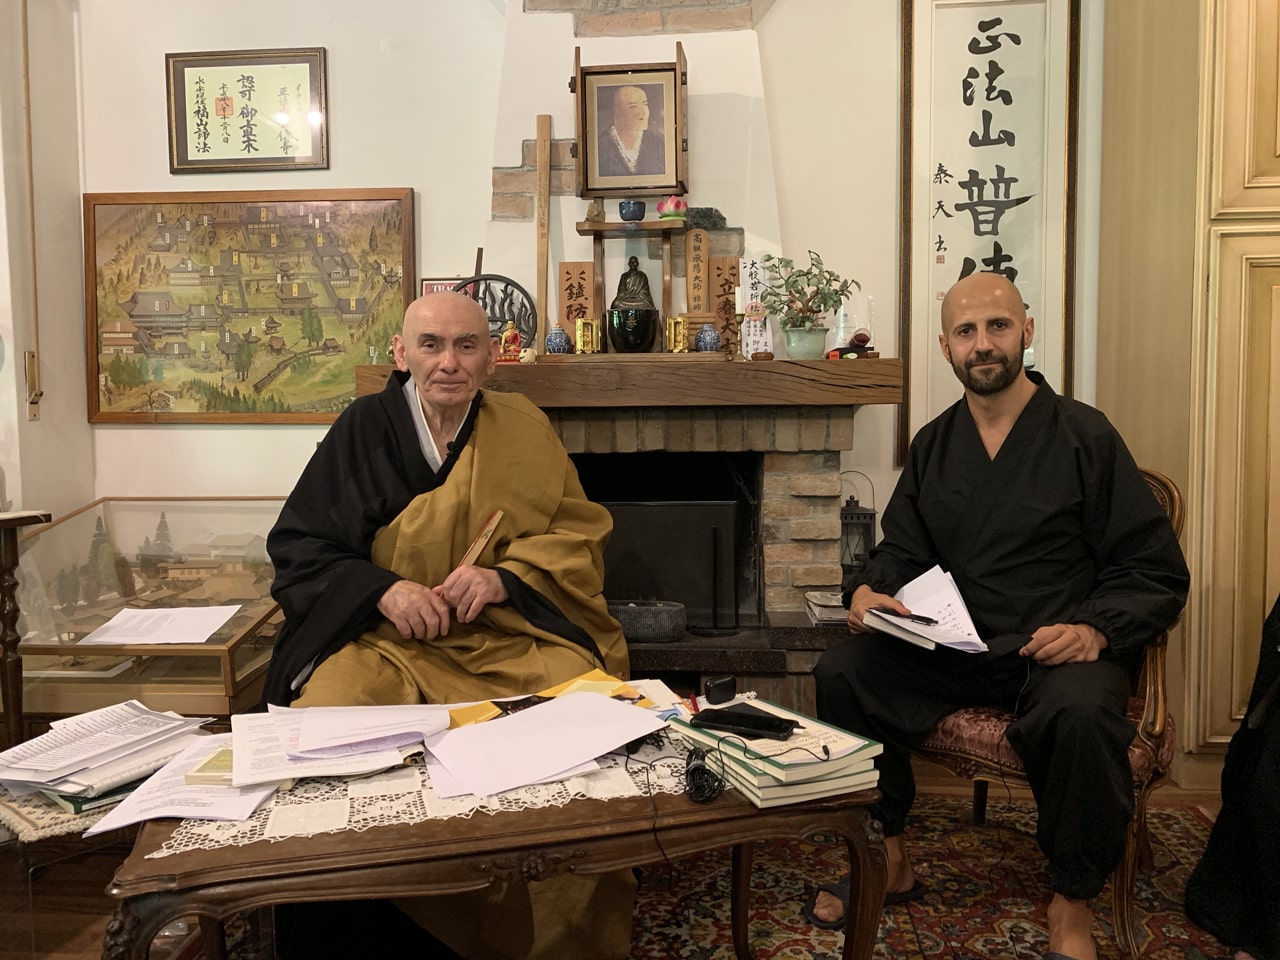 Taiten Guareschi Zen Master and Isra Garcia zen apprentice